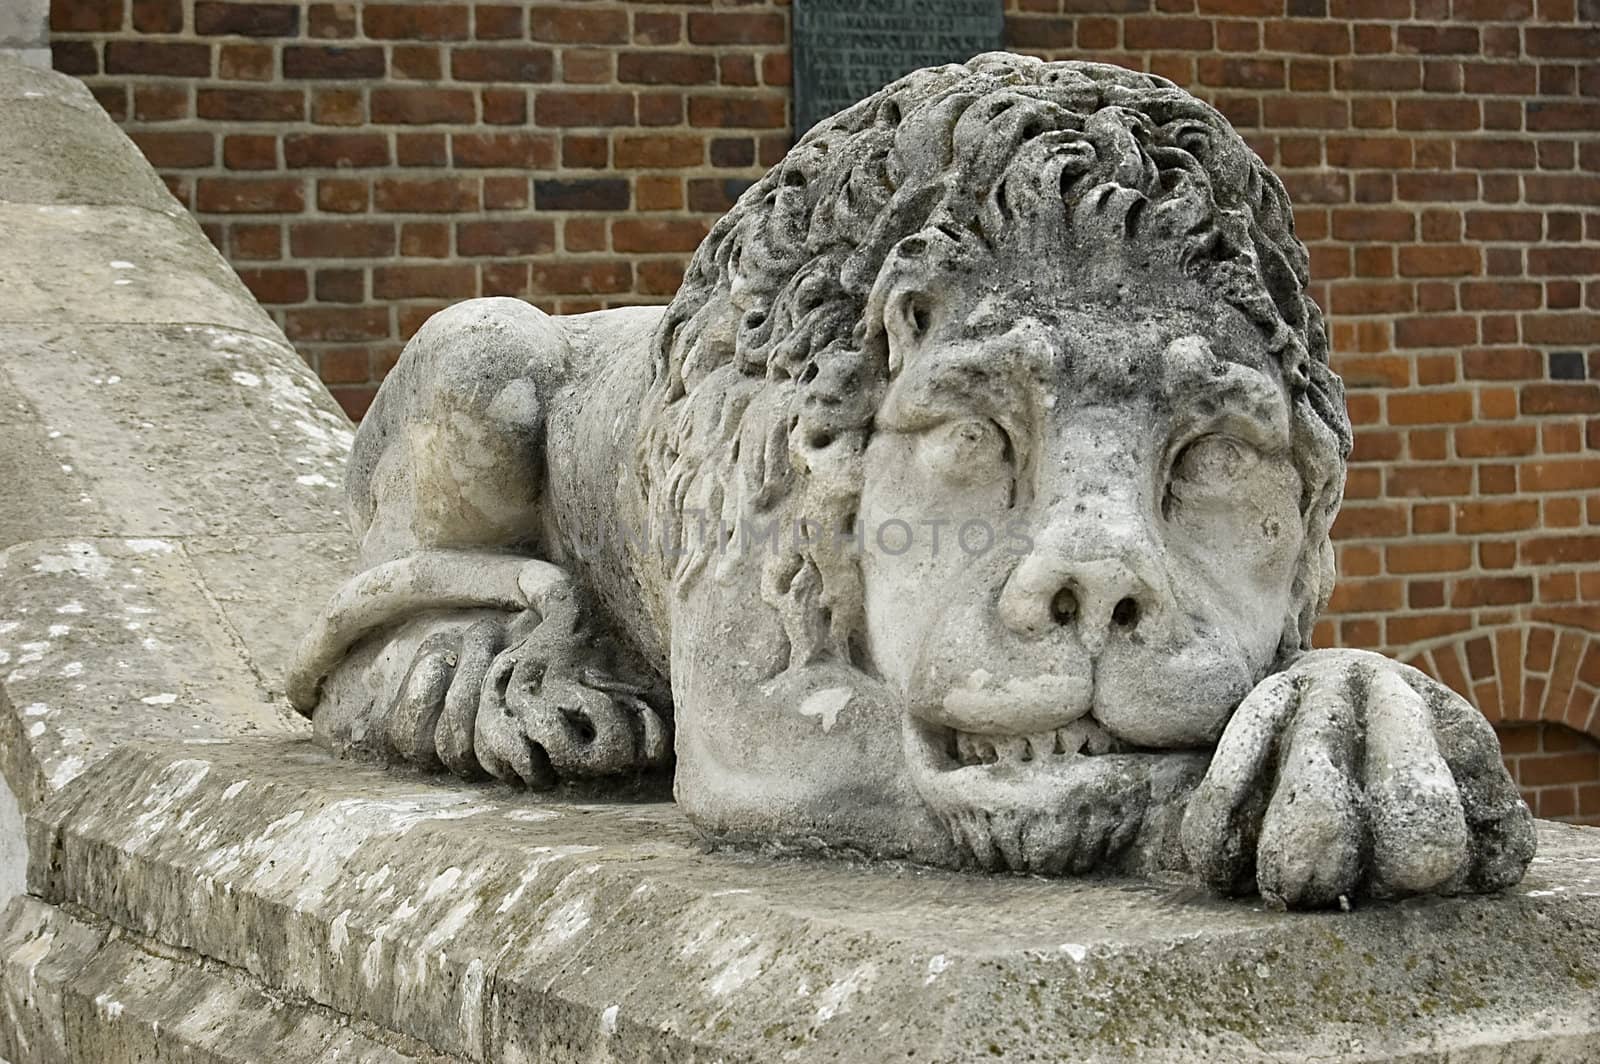 A lion statue, Krakow, Poland